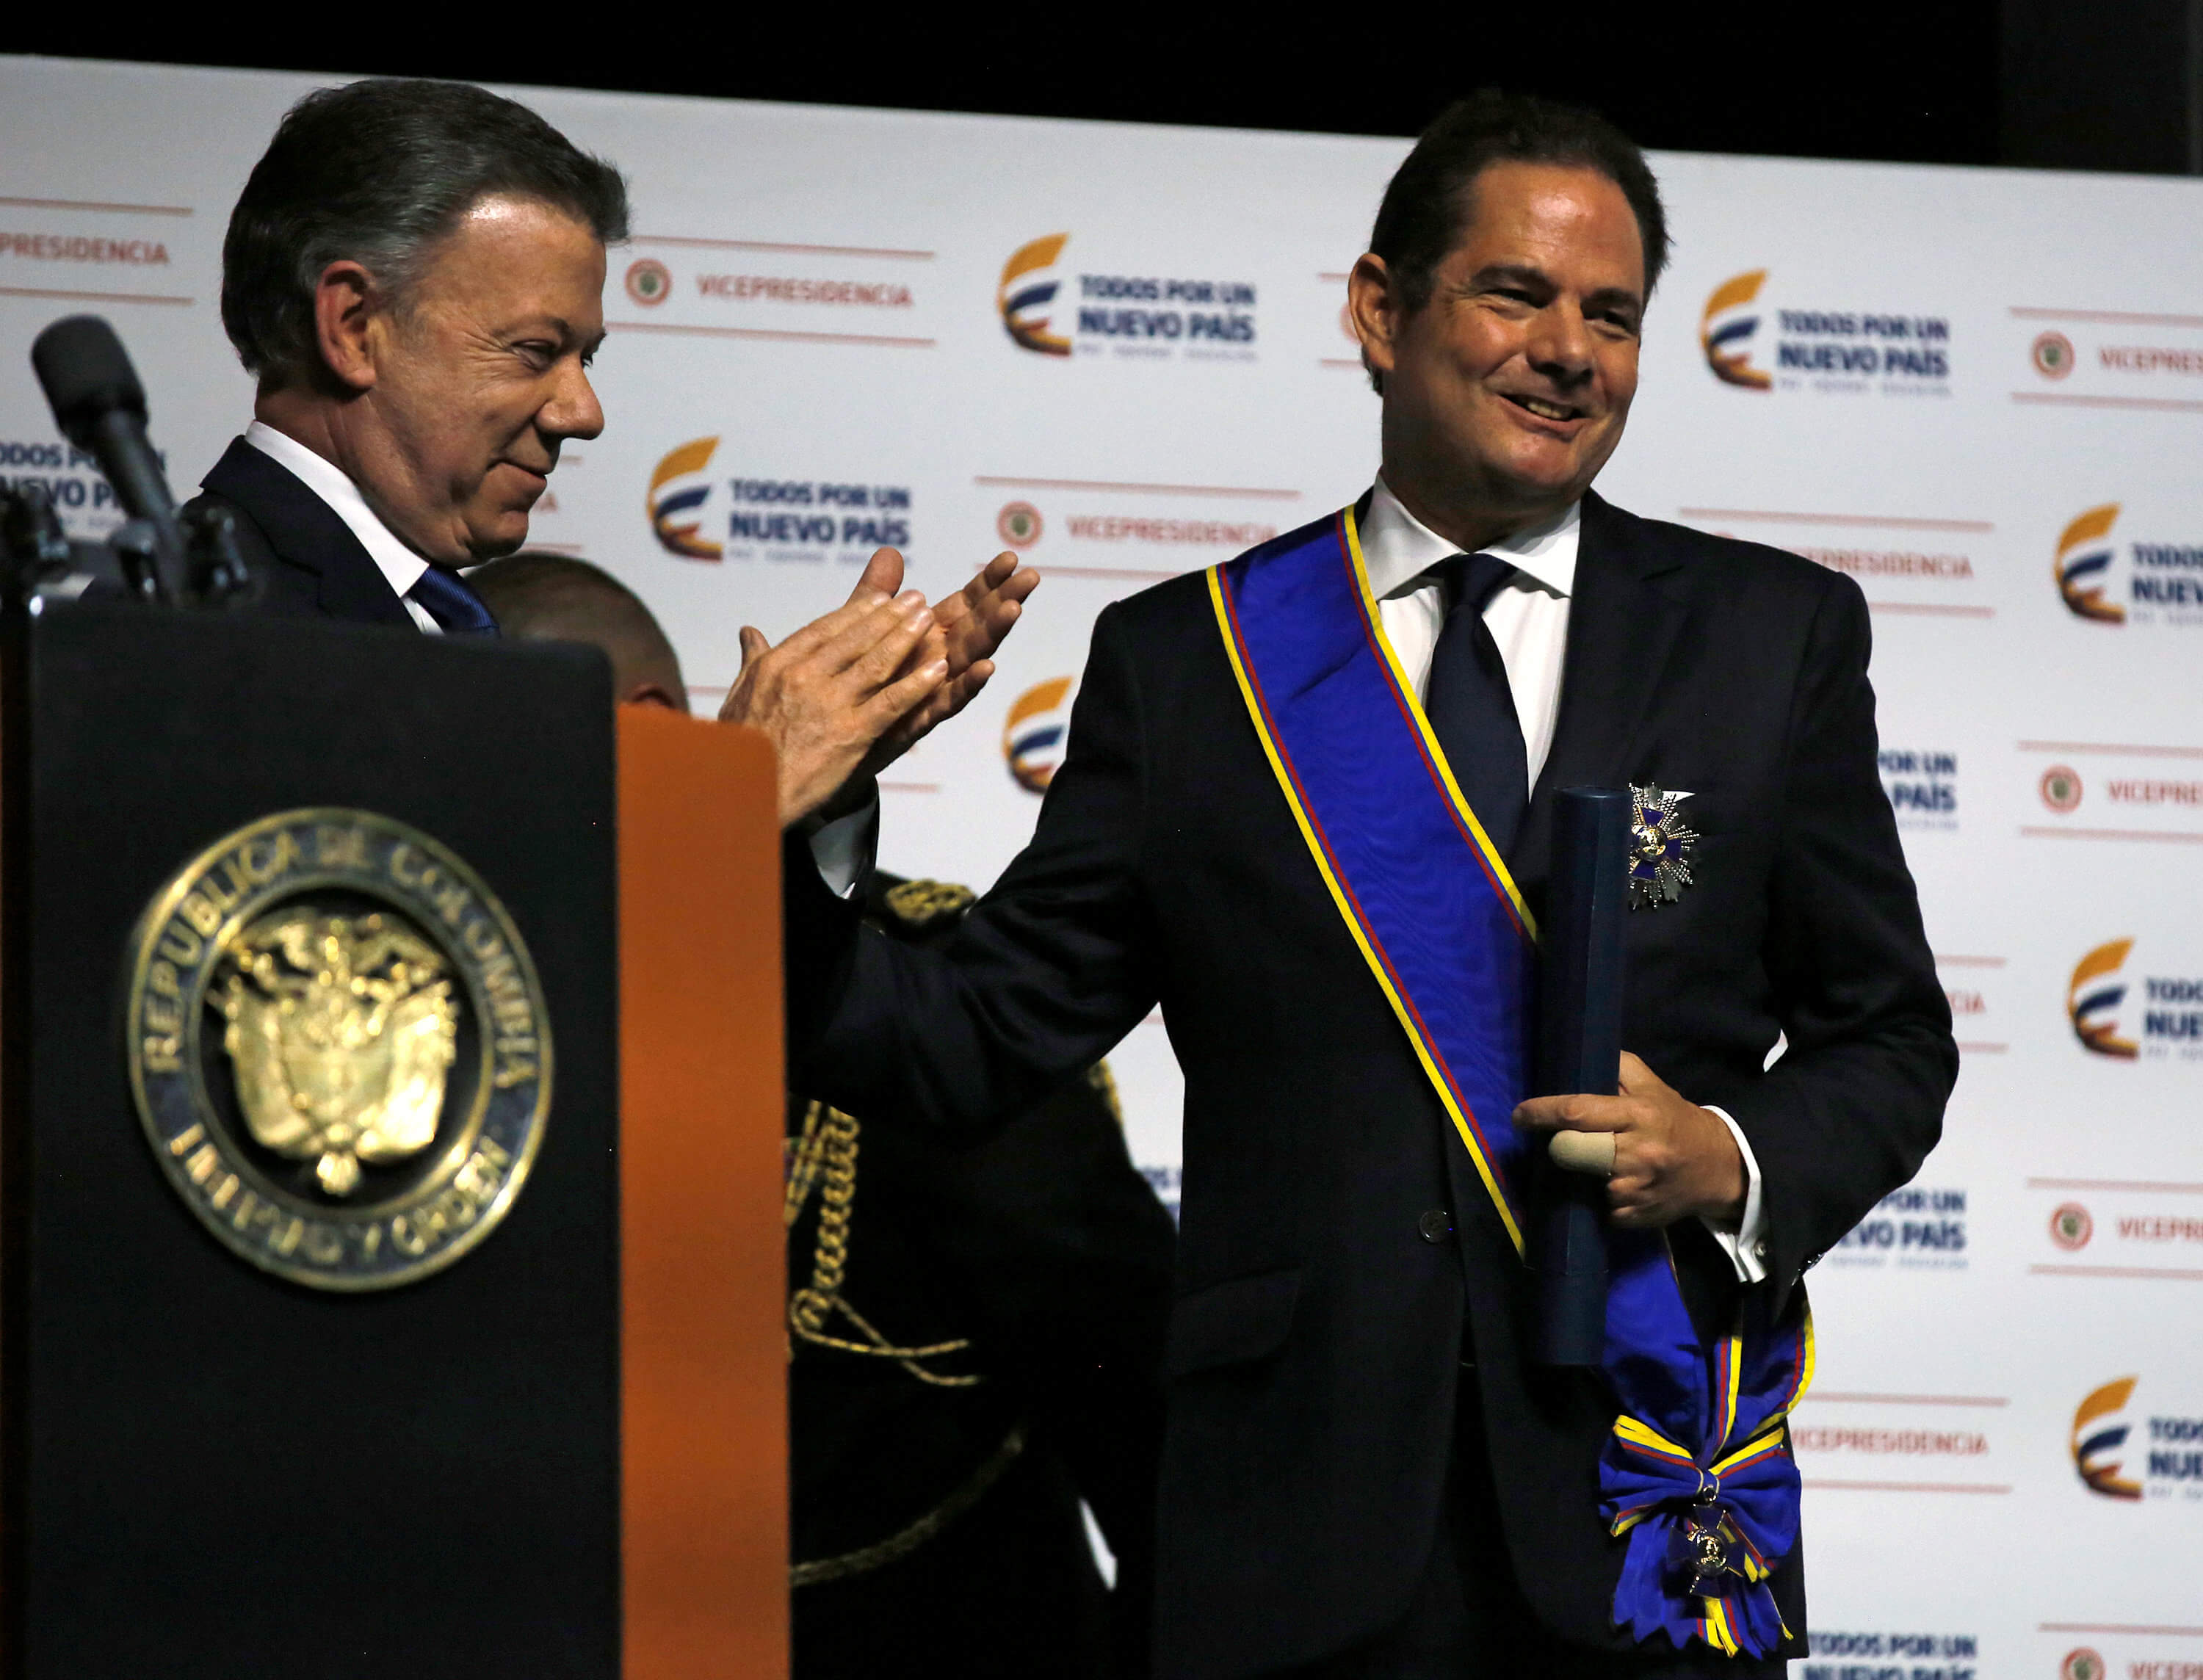 El presidente colombiano Juan Manuel Santos aplaude al vicepresidente de Colombia, Germán Vargas Lleras, en Bogotá, Colombia. (Reuters)